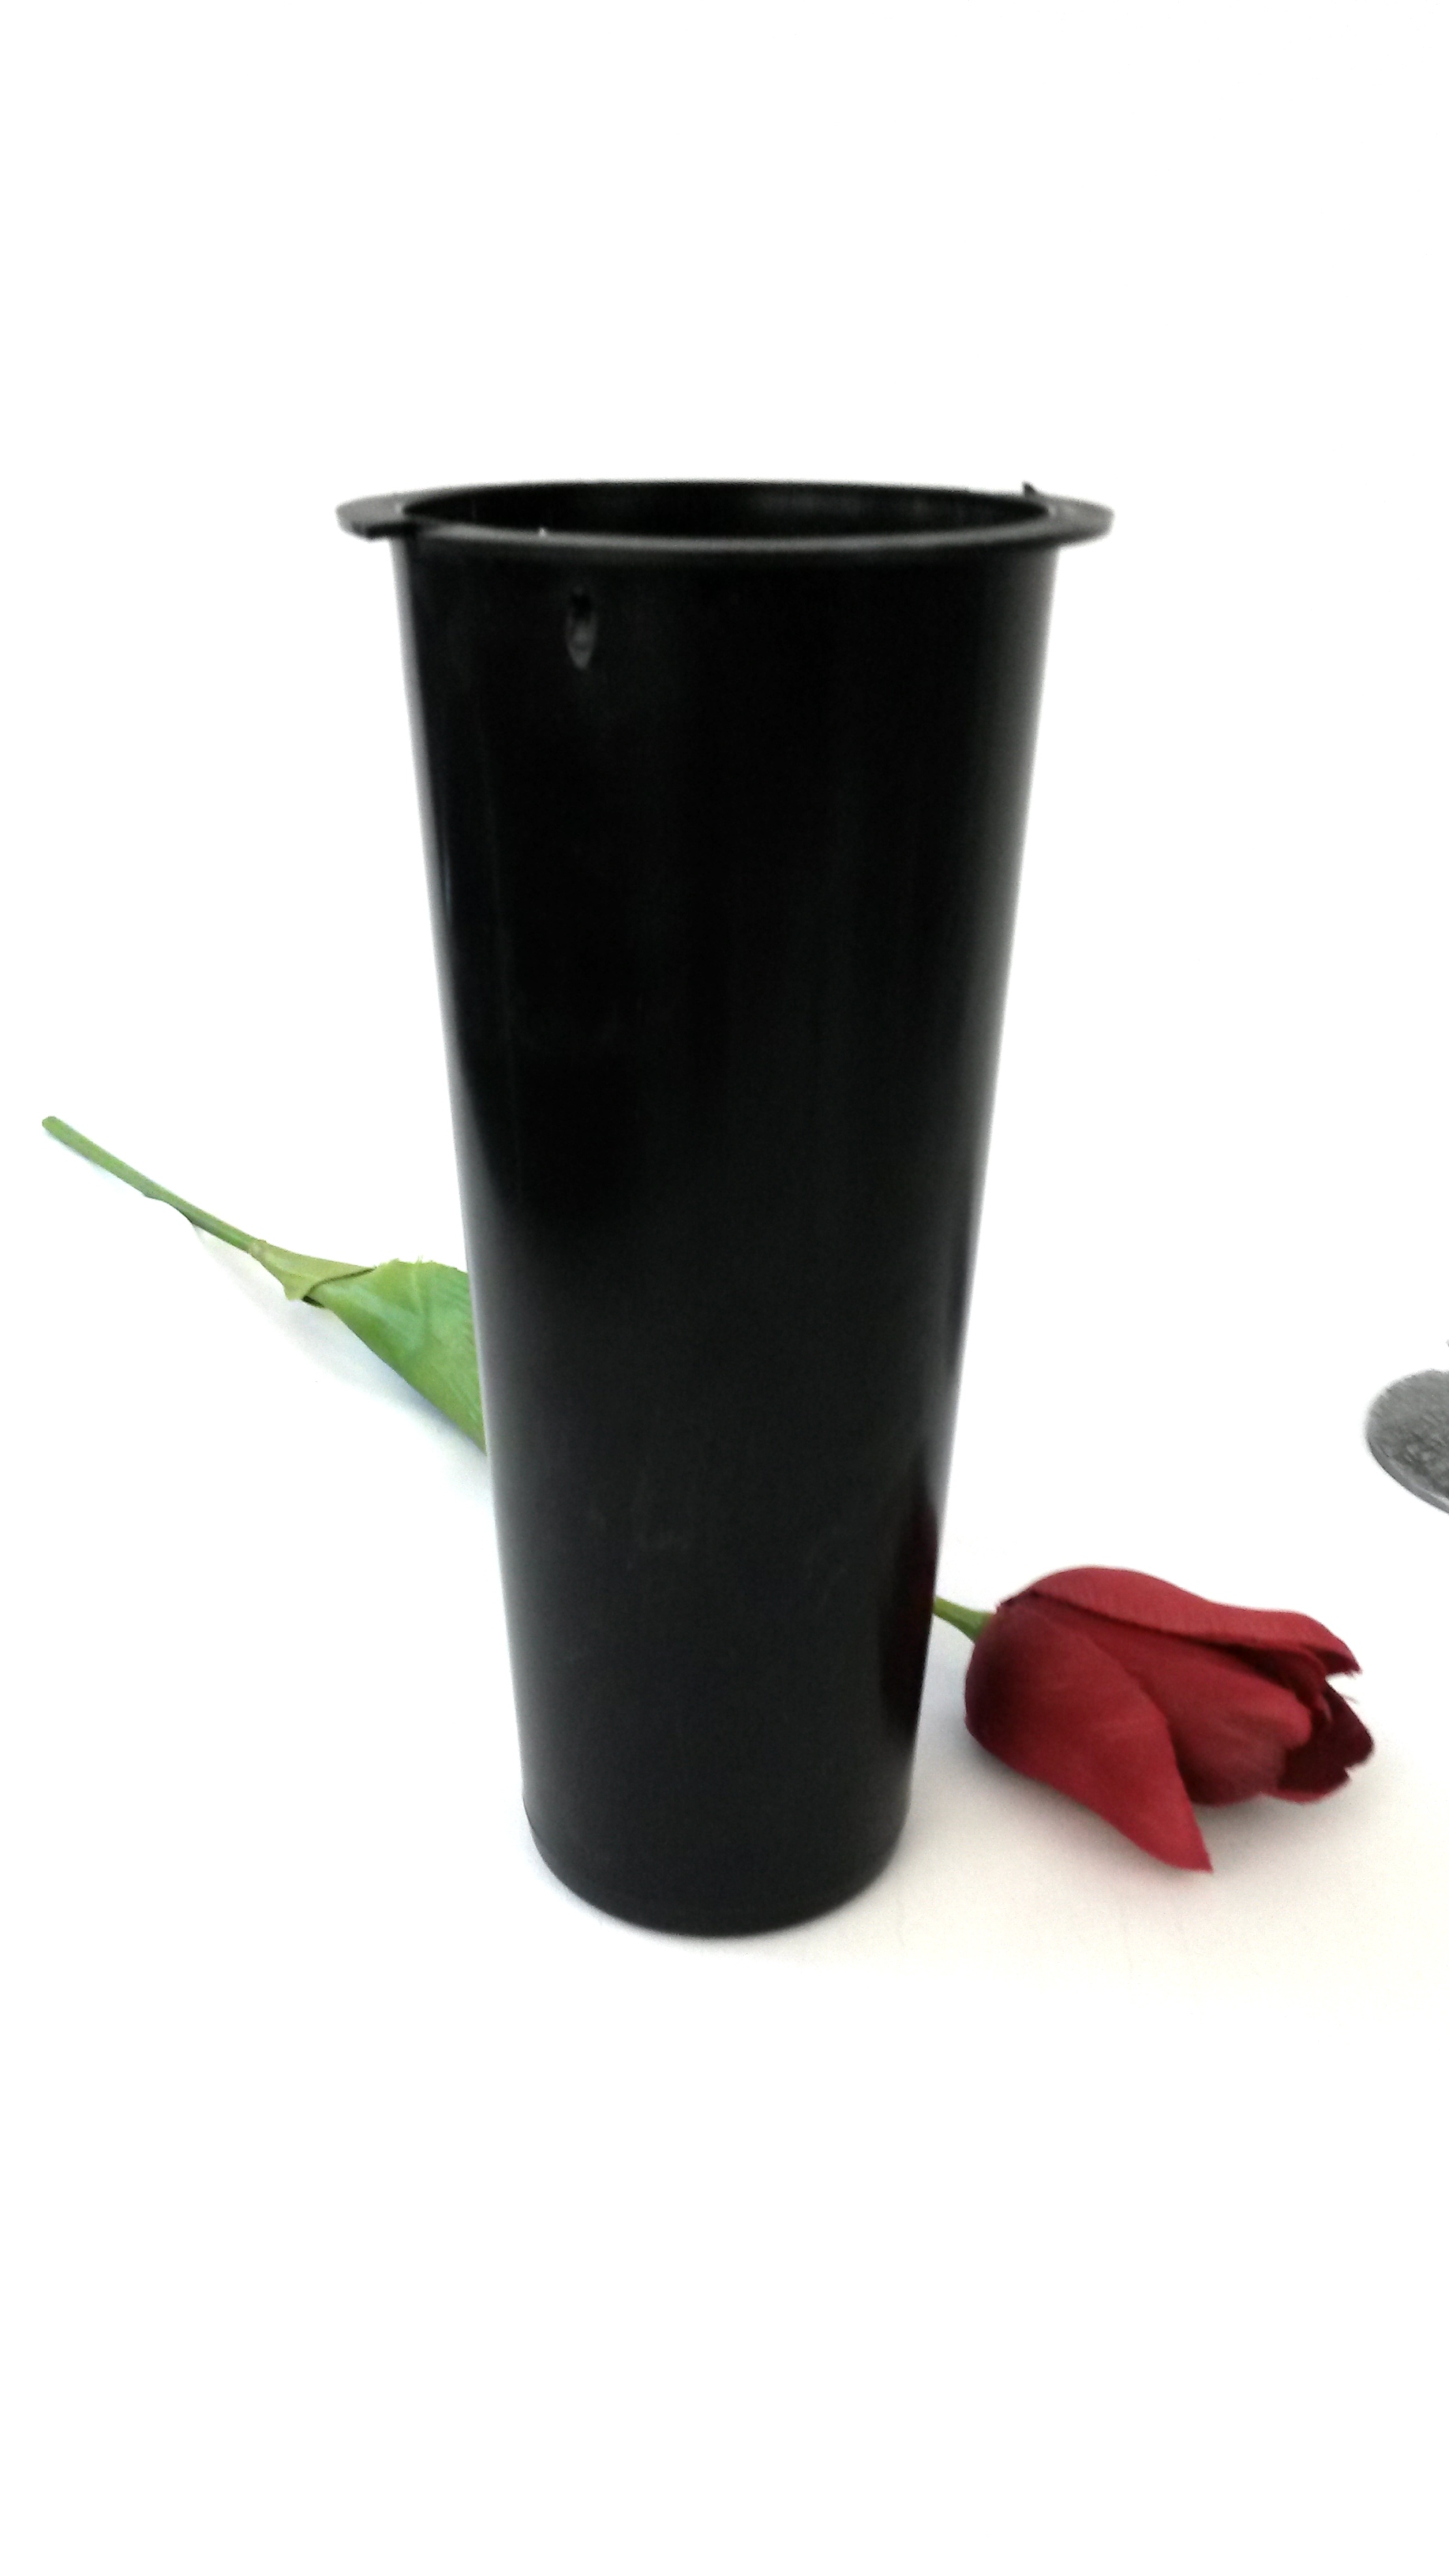 Einsatz Vase 21 cm h, 9,8 cm Ø außen